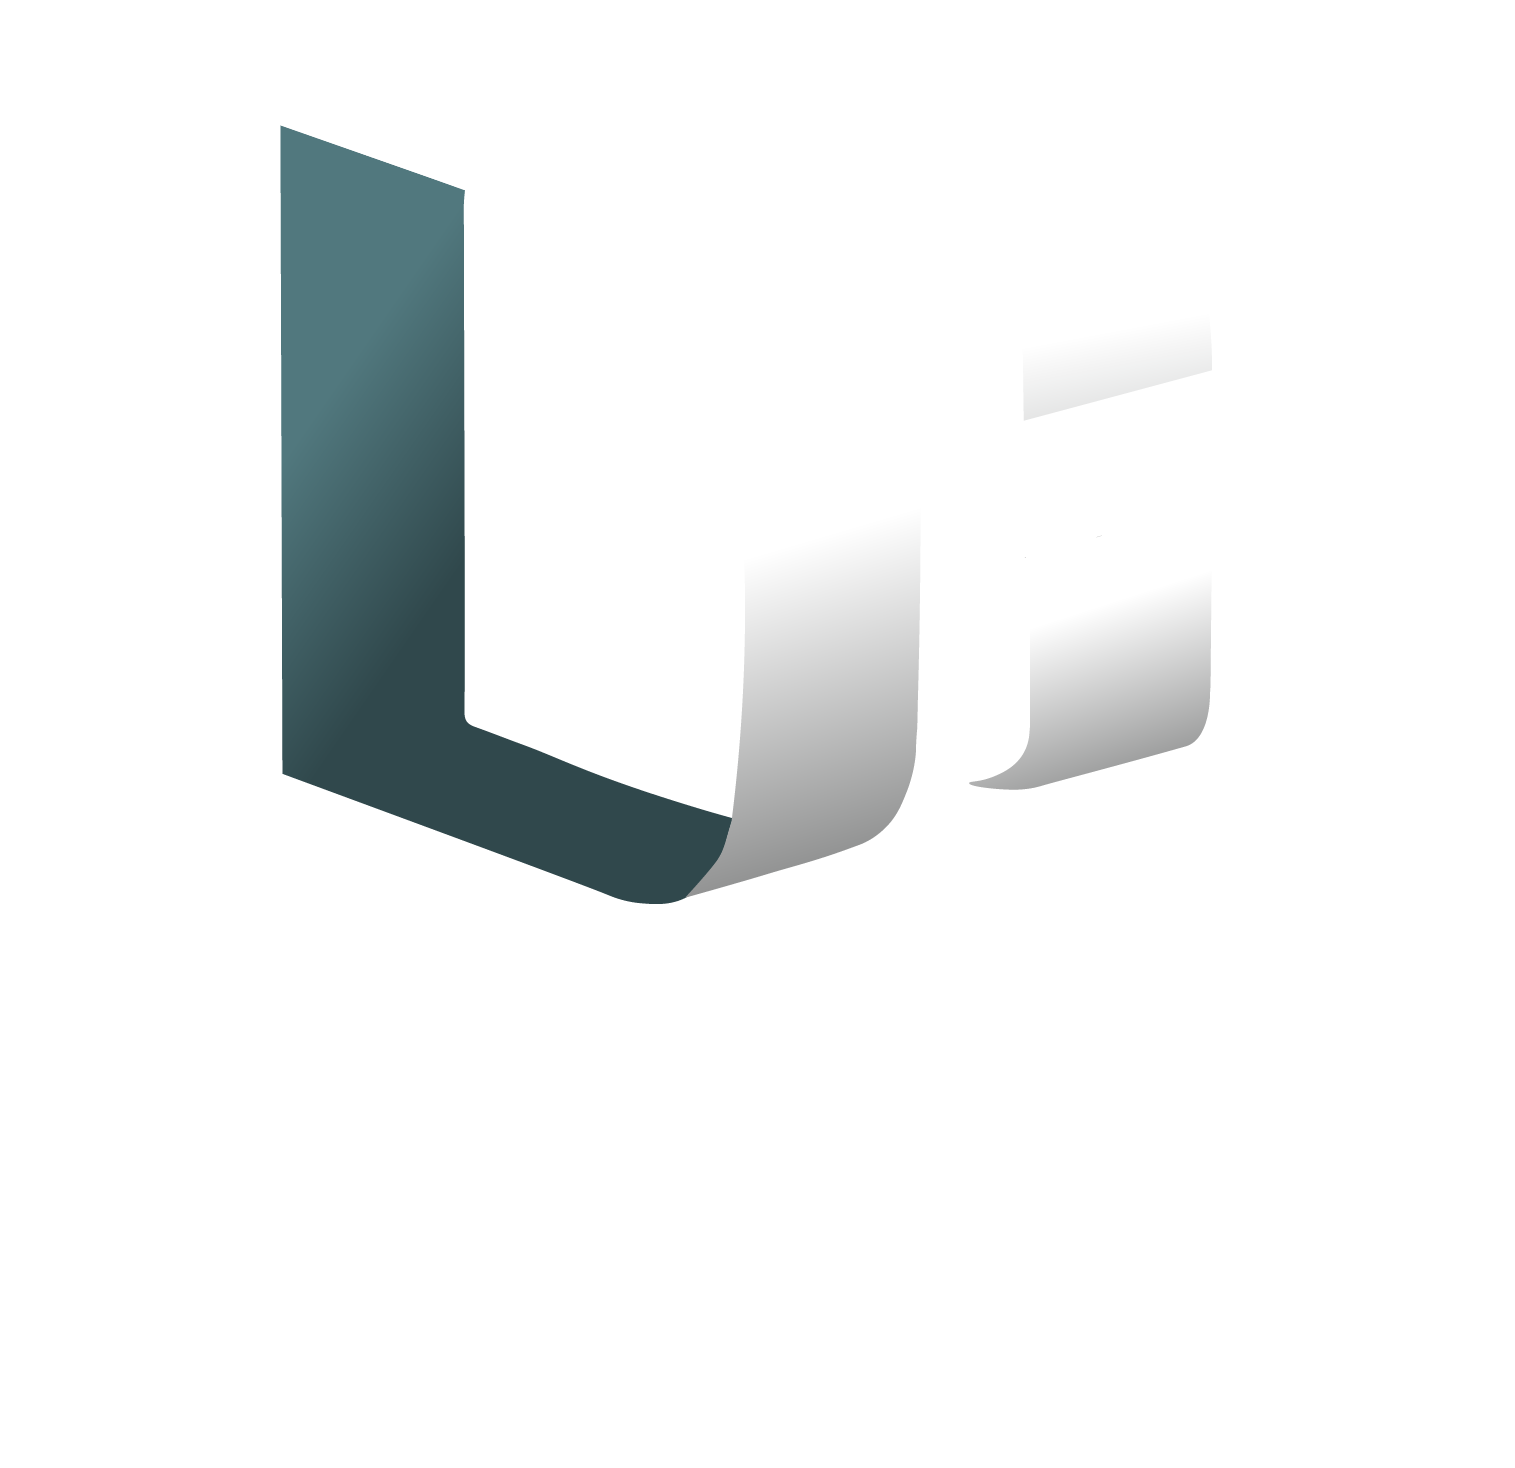 DC Media